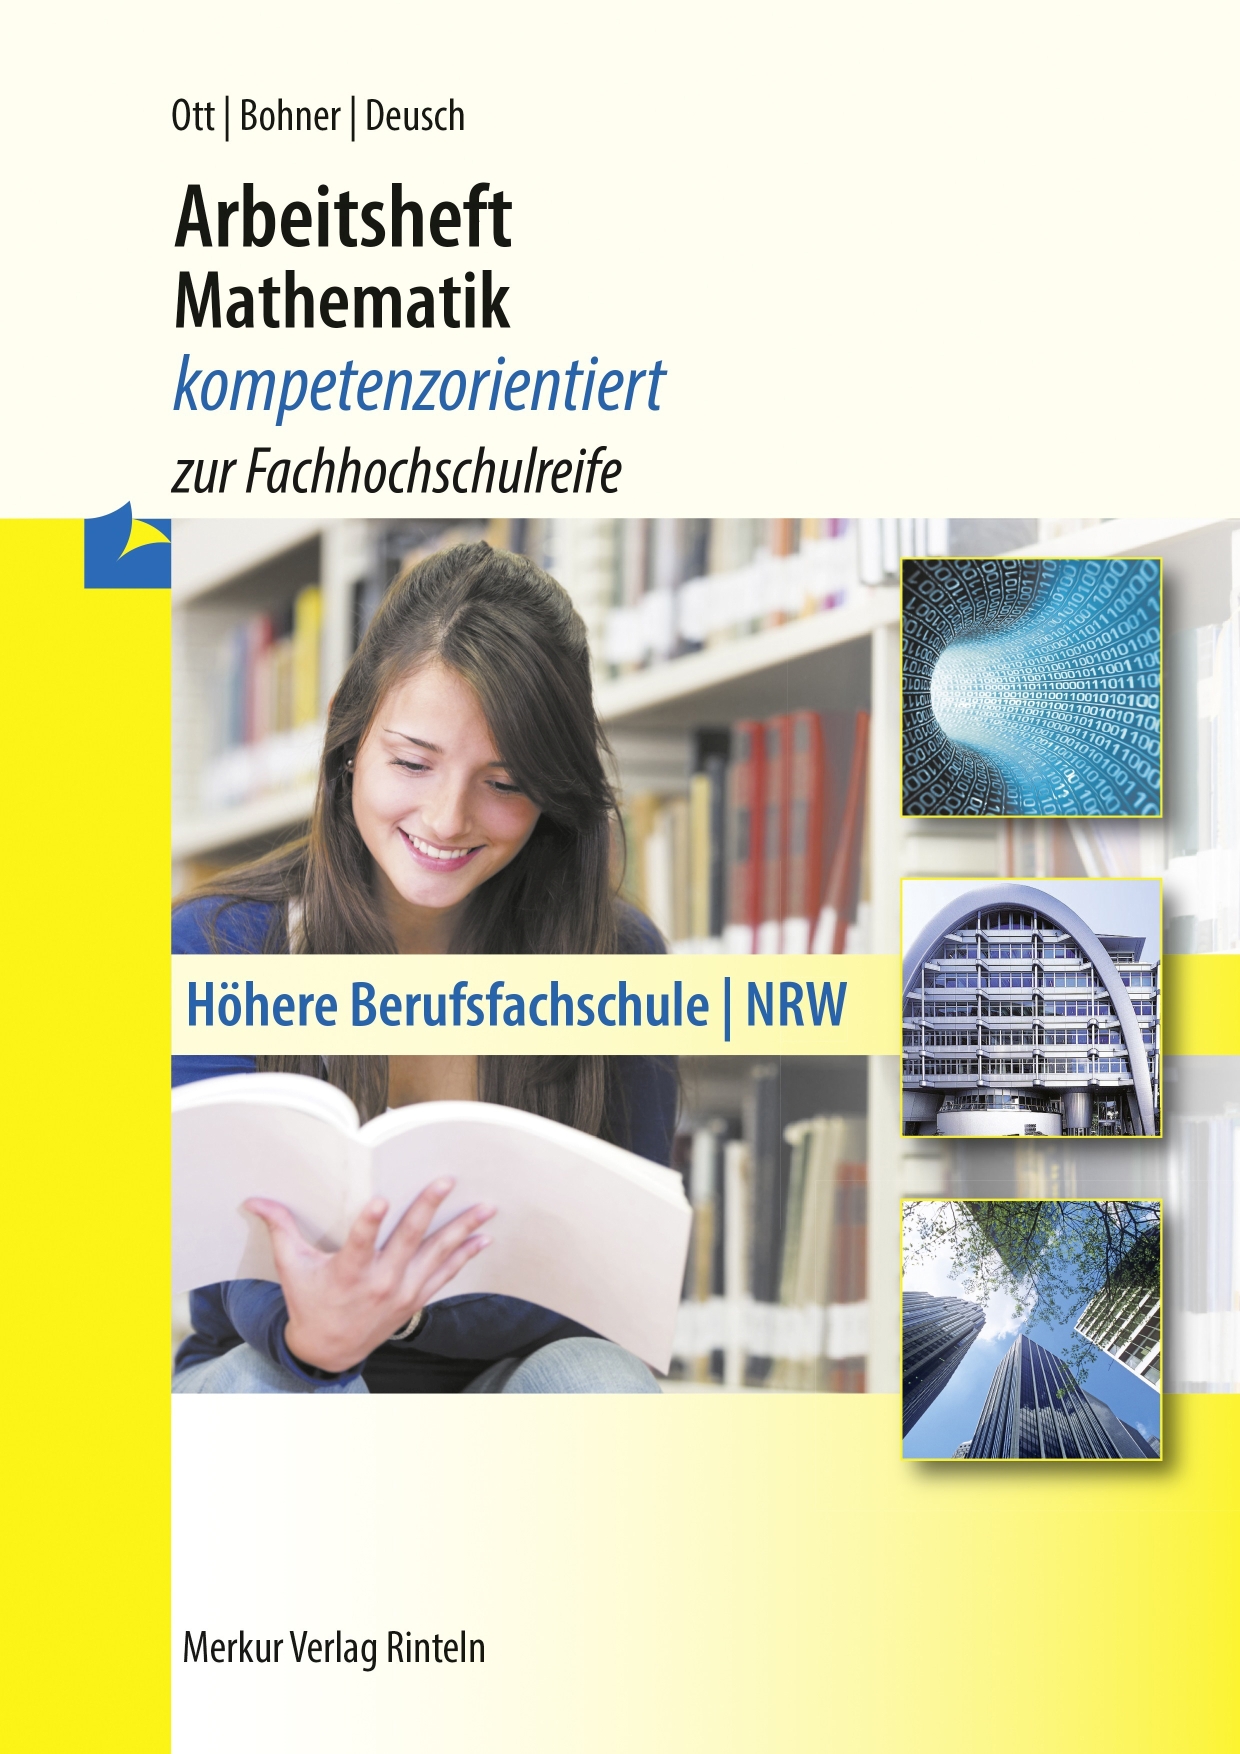 Arbeitsheft Mathematik - kompetenzorientiert zur Fachhochschulreife Höhere Berufsfachschule (NRW) - inkl. Lösungen